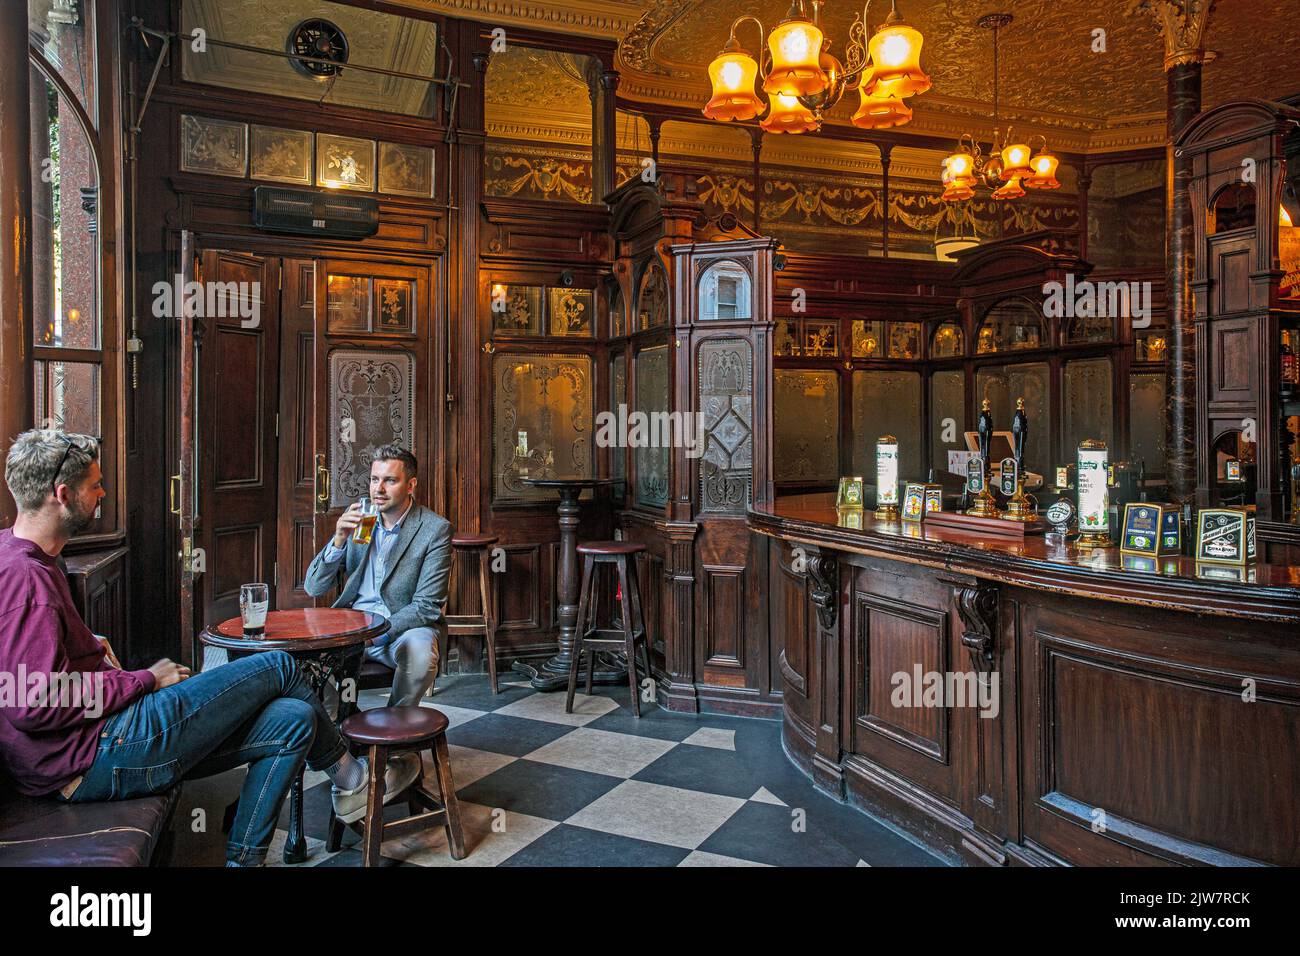 Chiusure di massa dei pub a causa delle bollette energetiche in aumento. Due uomini bevono birra nel pub Princess Louise, Londra, Regno Unito. Foto Stock